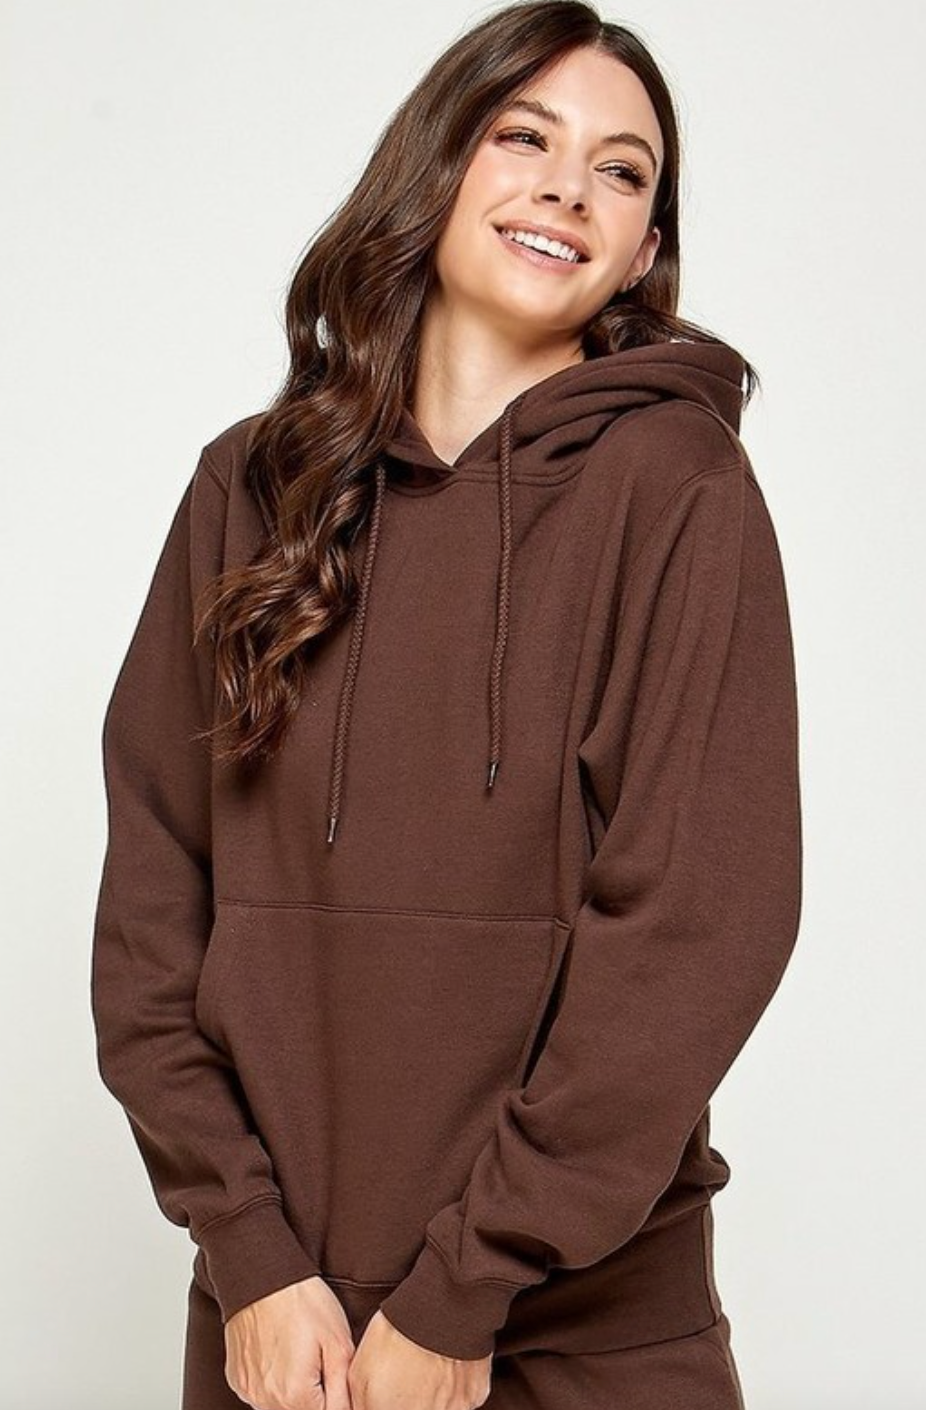 Women's brown fleece hoodie